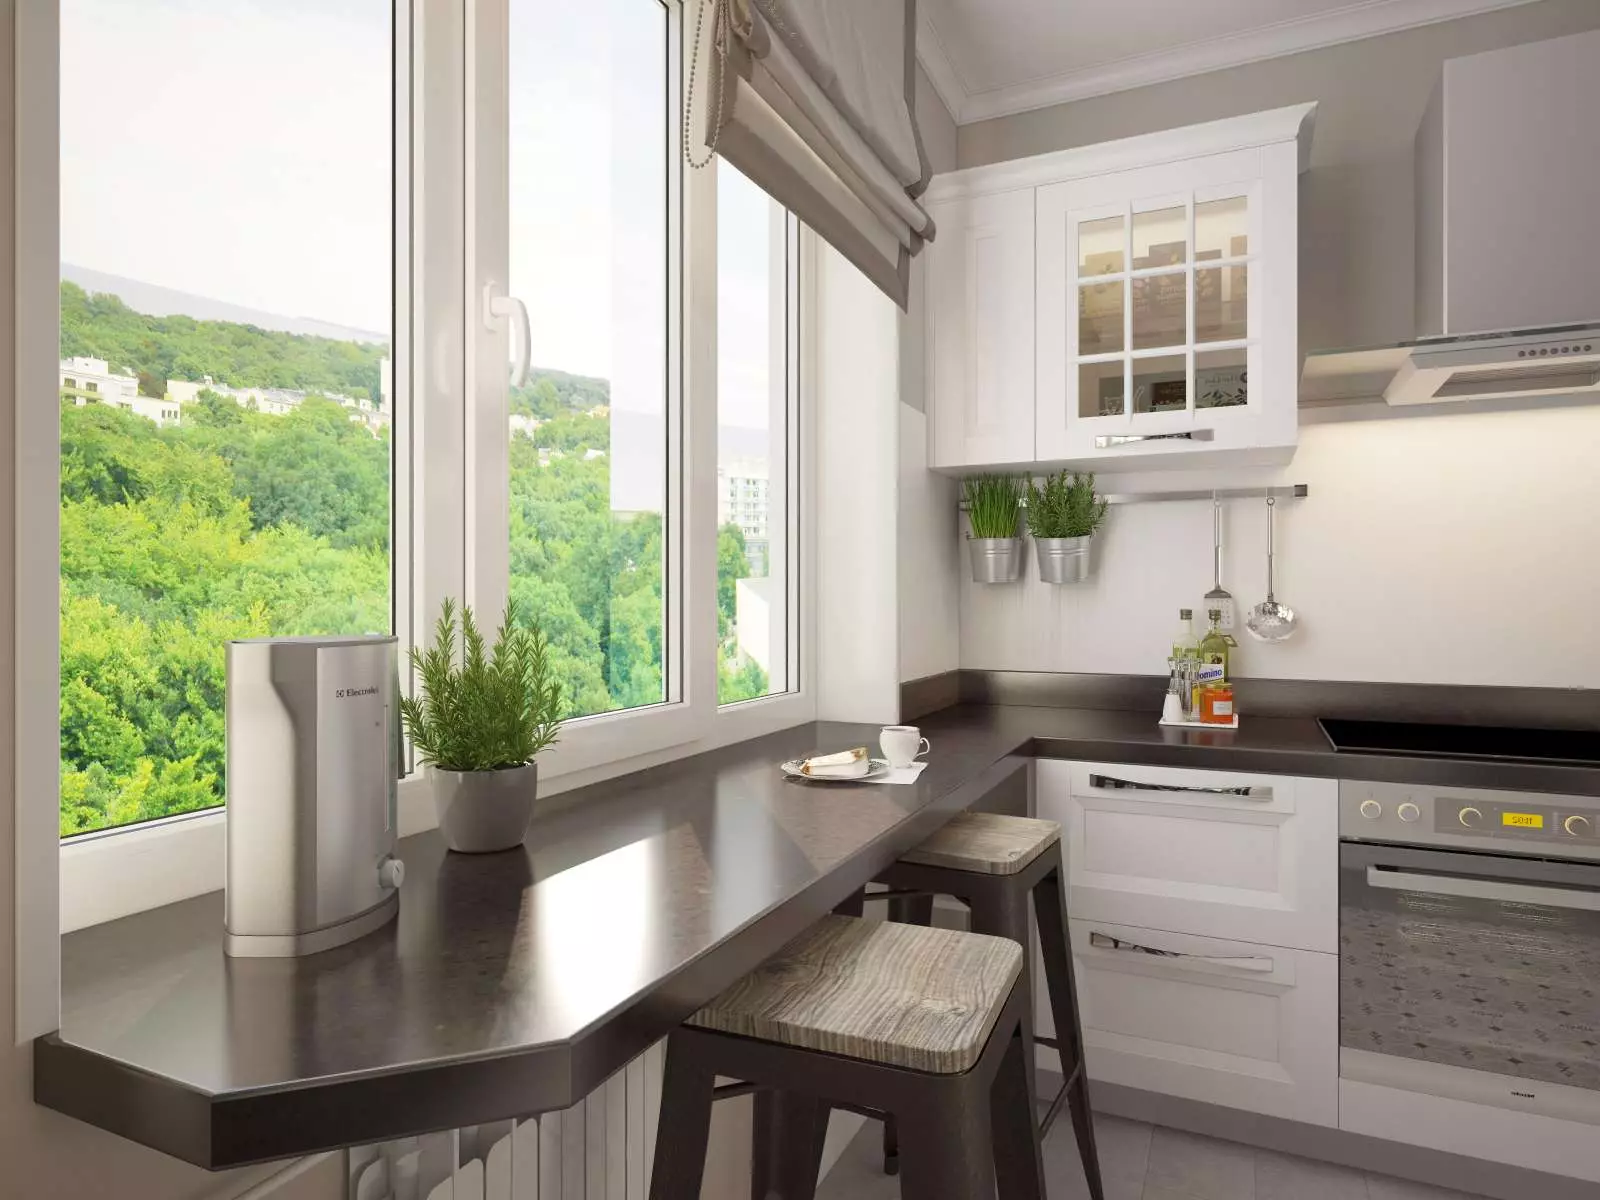 Кухня з вікном в робочій зоні (44 фото): варіанти дизайну і створення проекту інтер'єру кухні з вікном над робочою поверхнею. Як задіяти вікно в кухні-вітальні? красиві приклади 9838_4